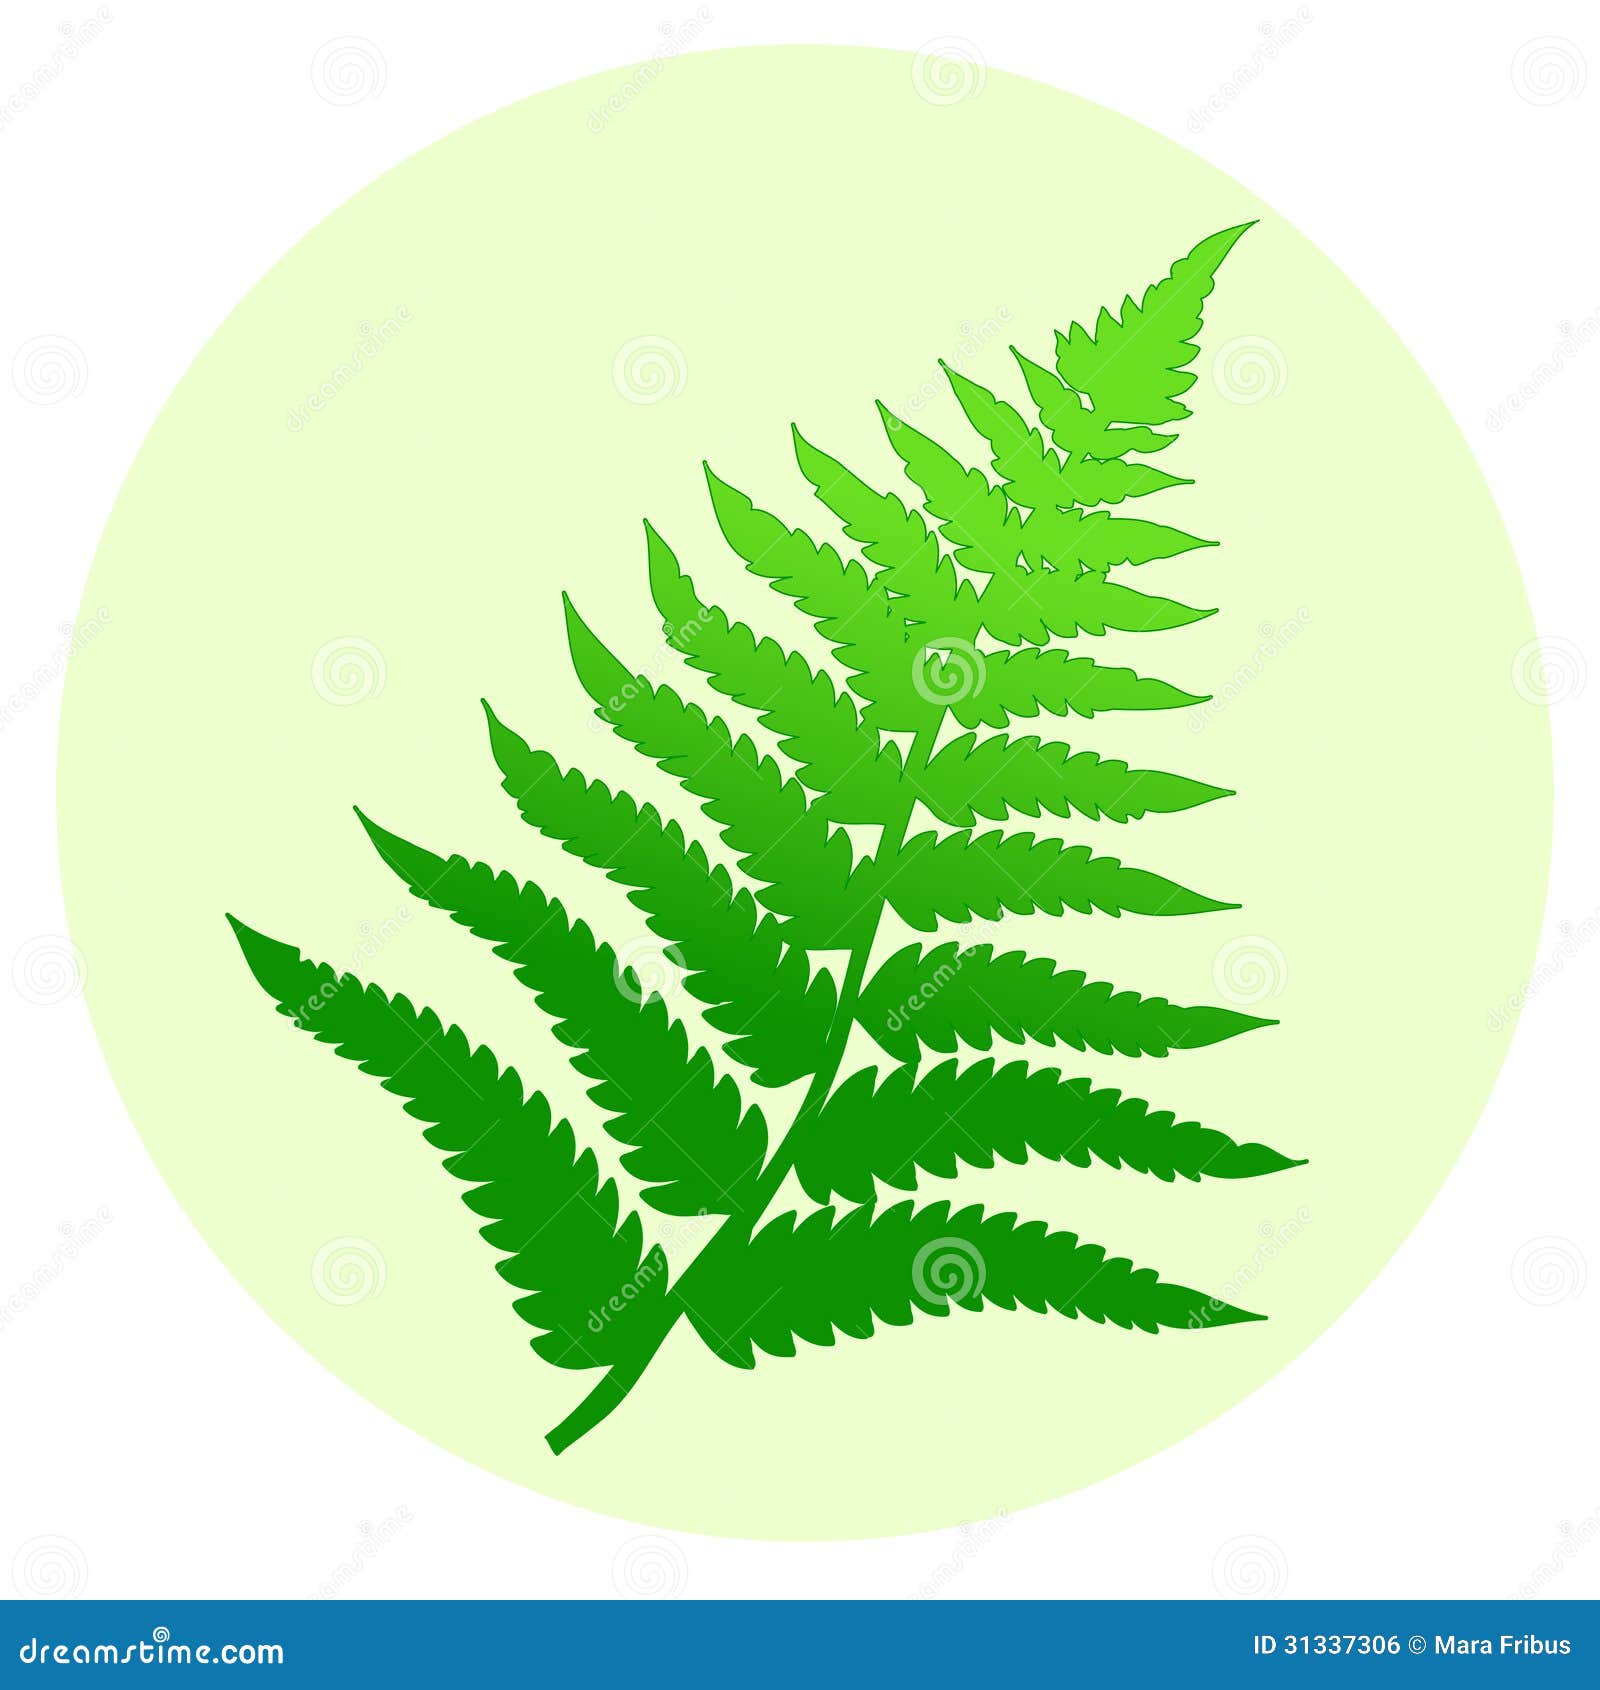 clip art fern leaf - photo #23